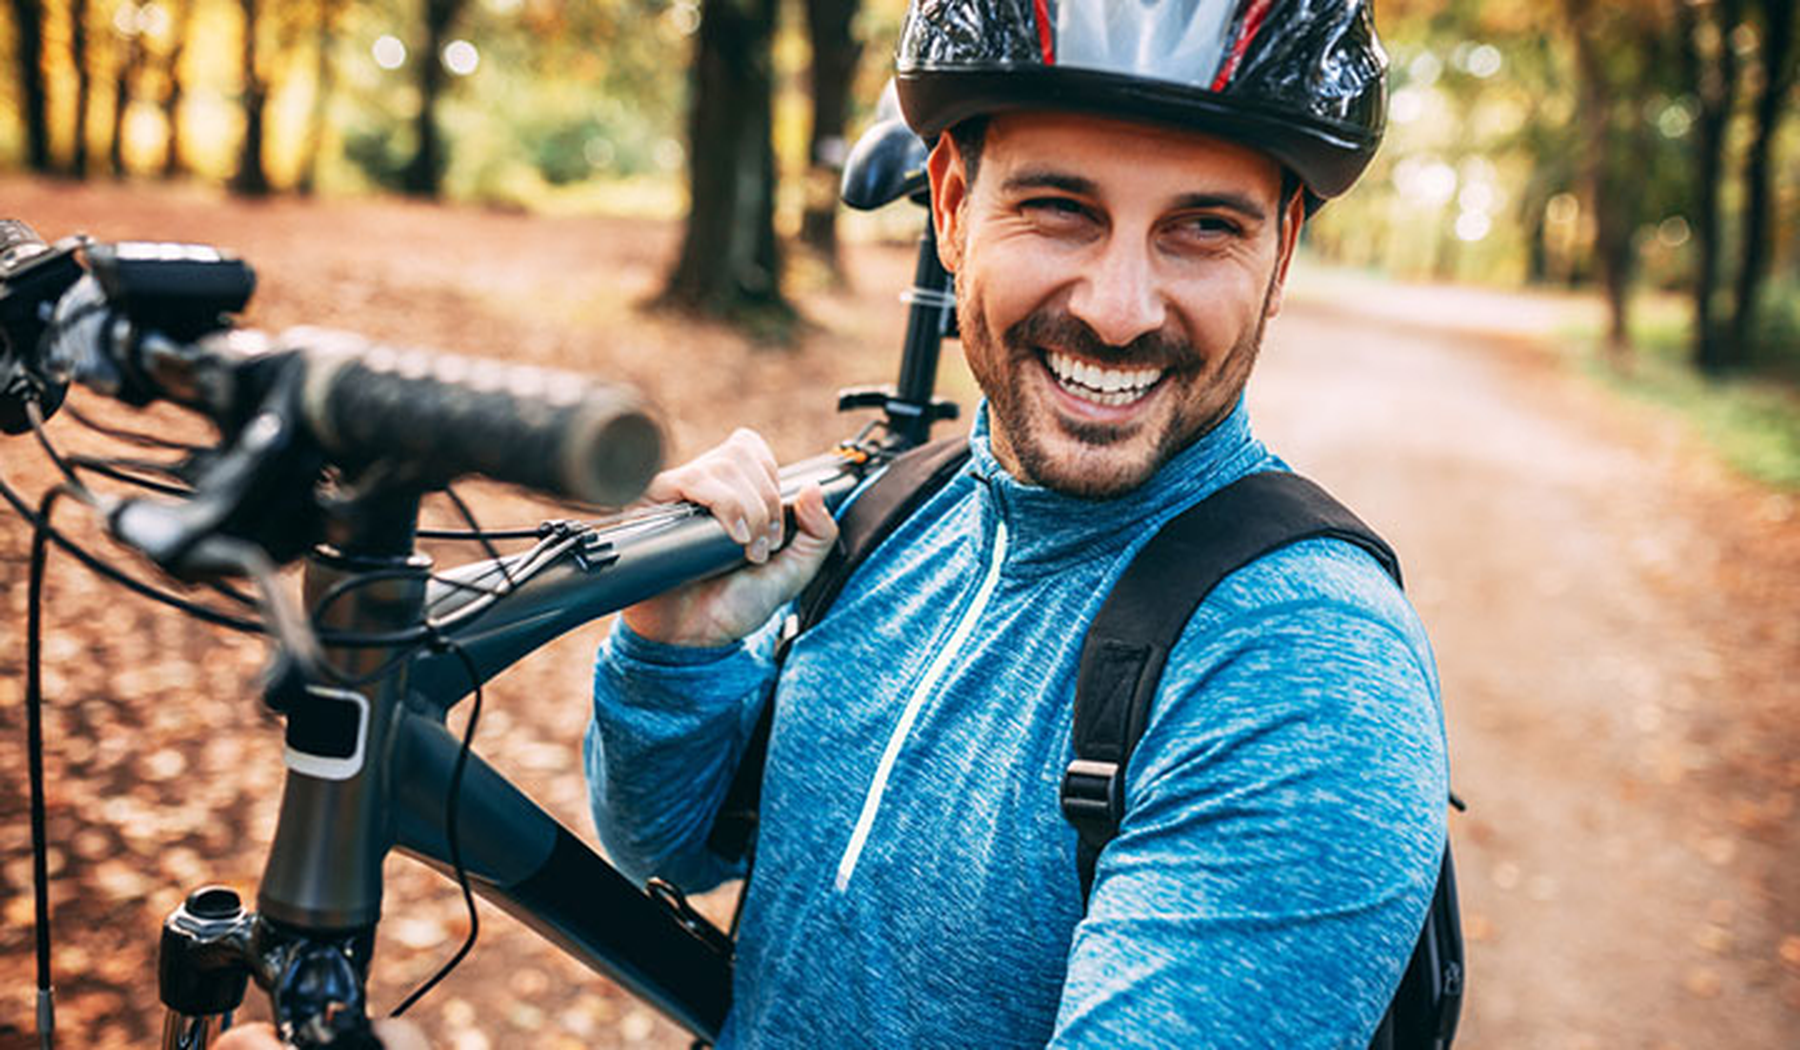 Smiling young man carrying a mountain bike